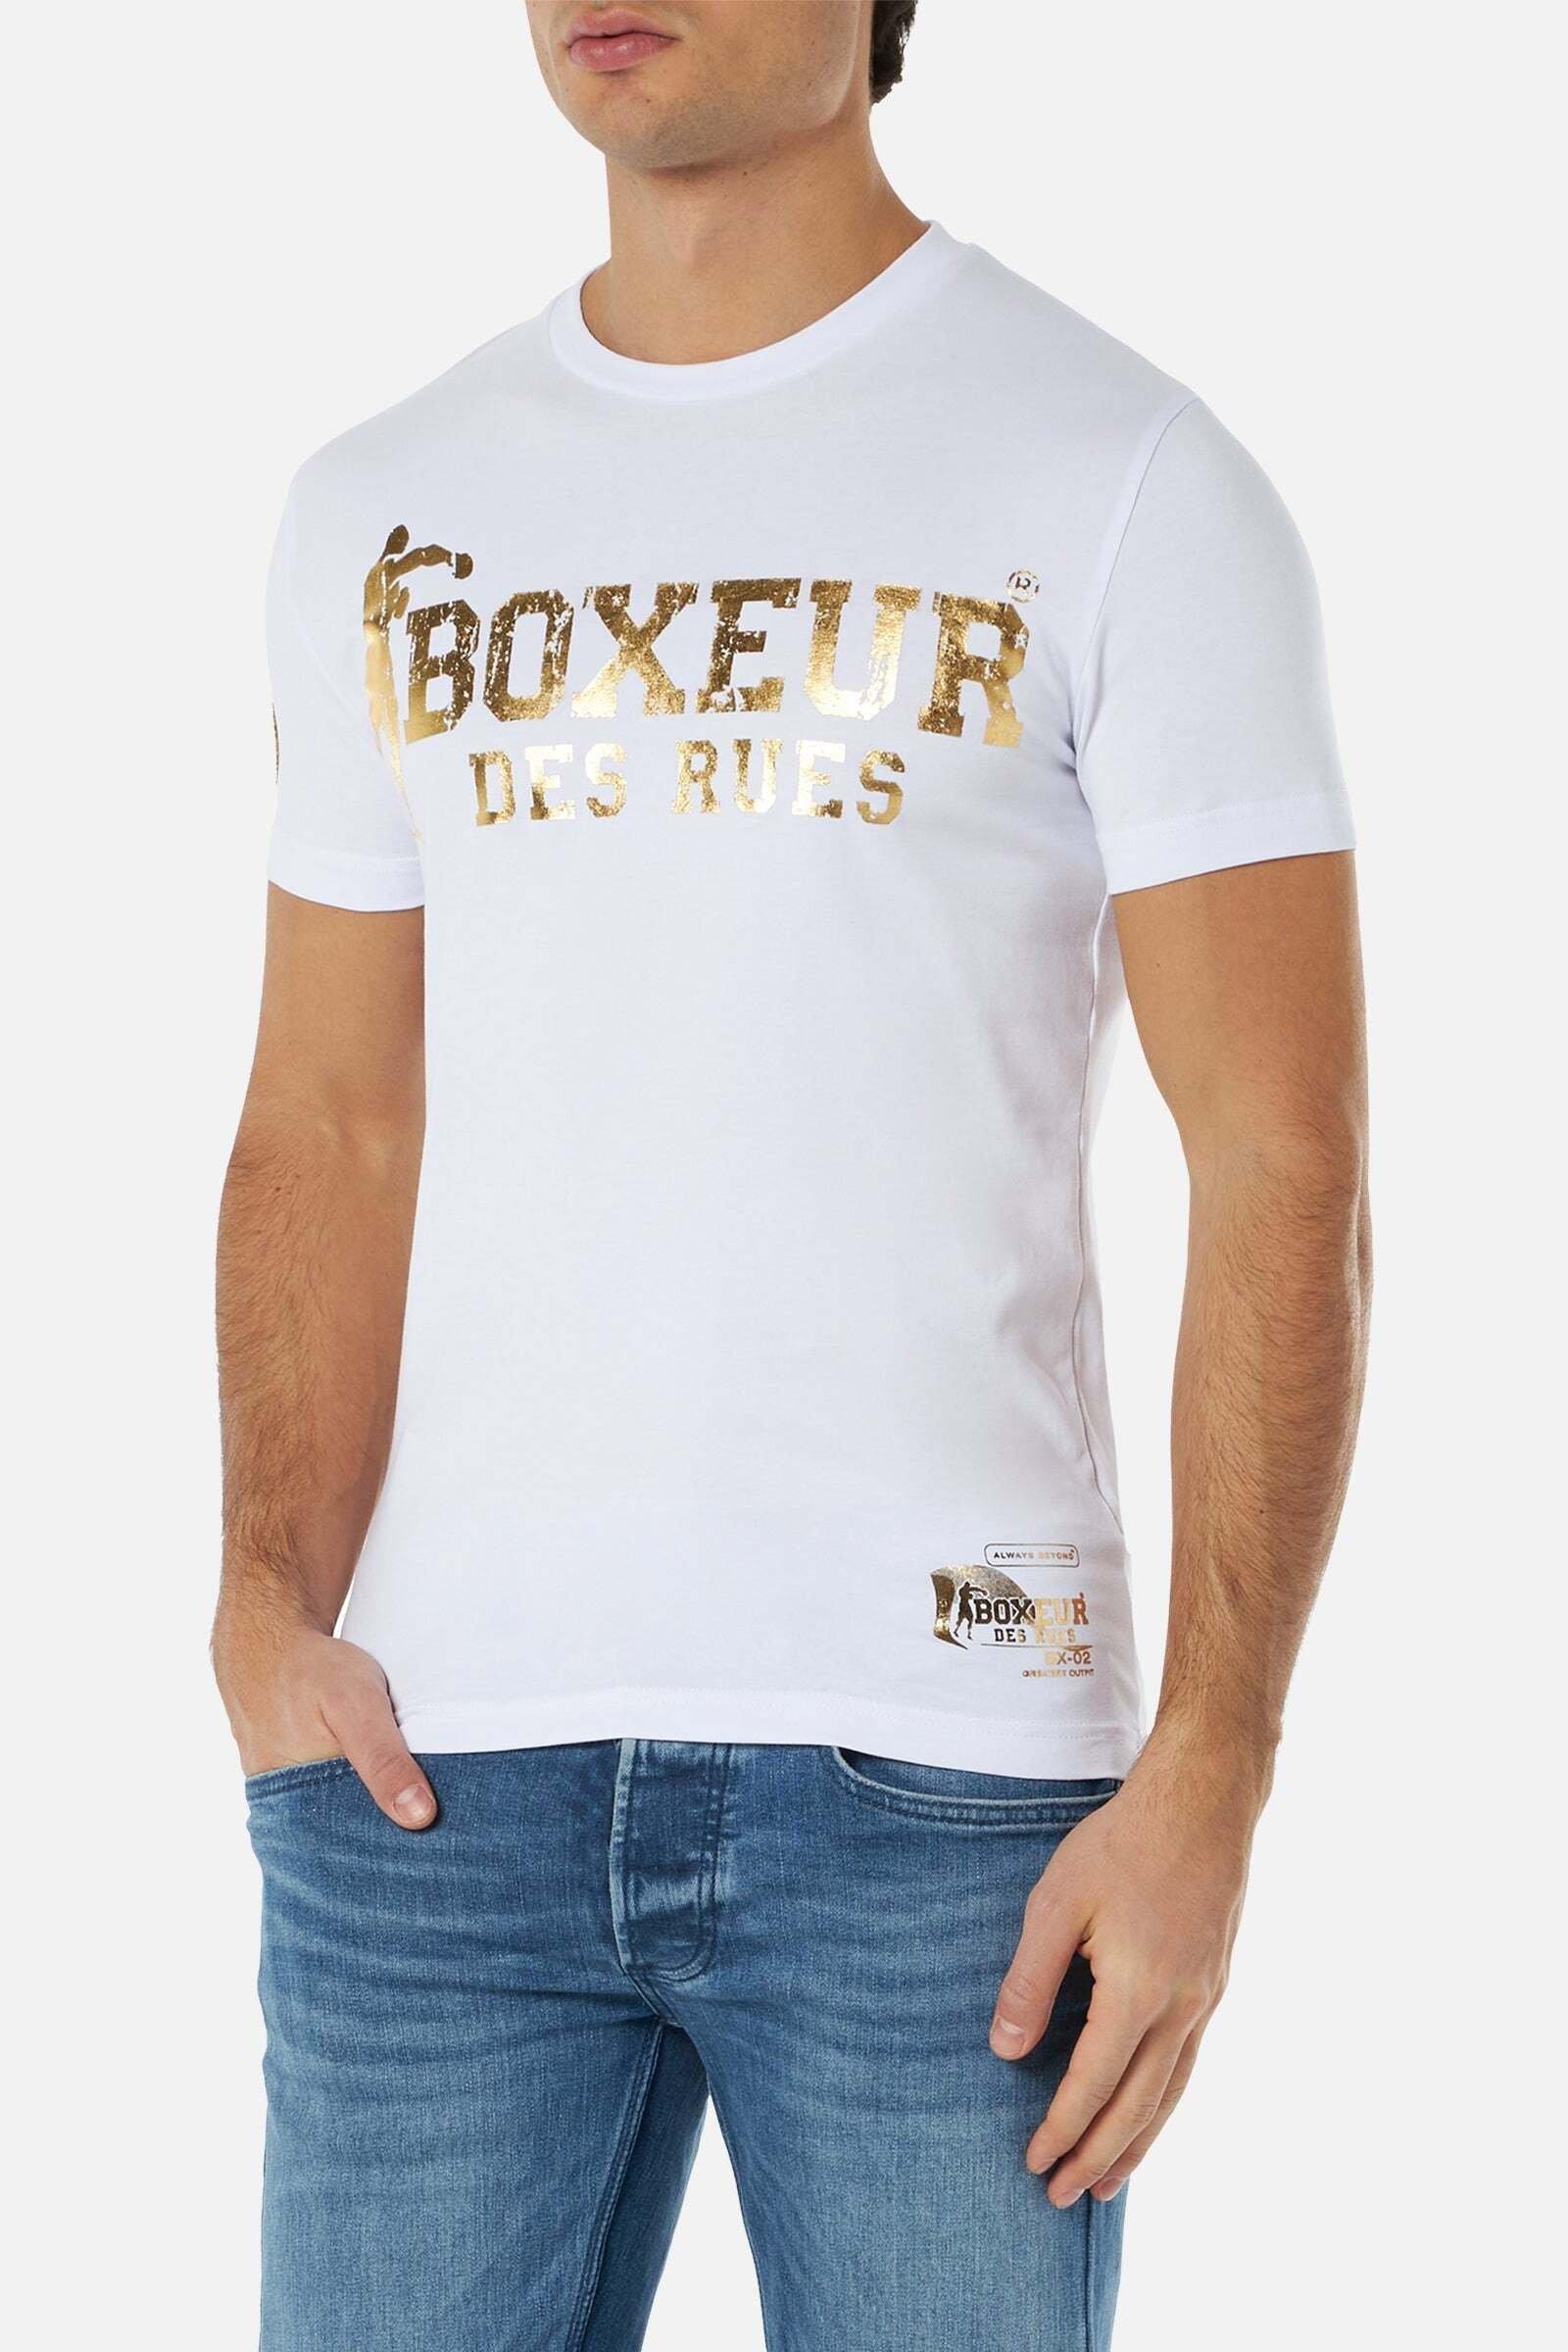 | T-Shirt Street RUES online DES BOXEUR Boxeur - MANOR kaufen T-Shirts 2